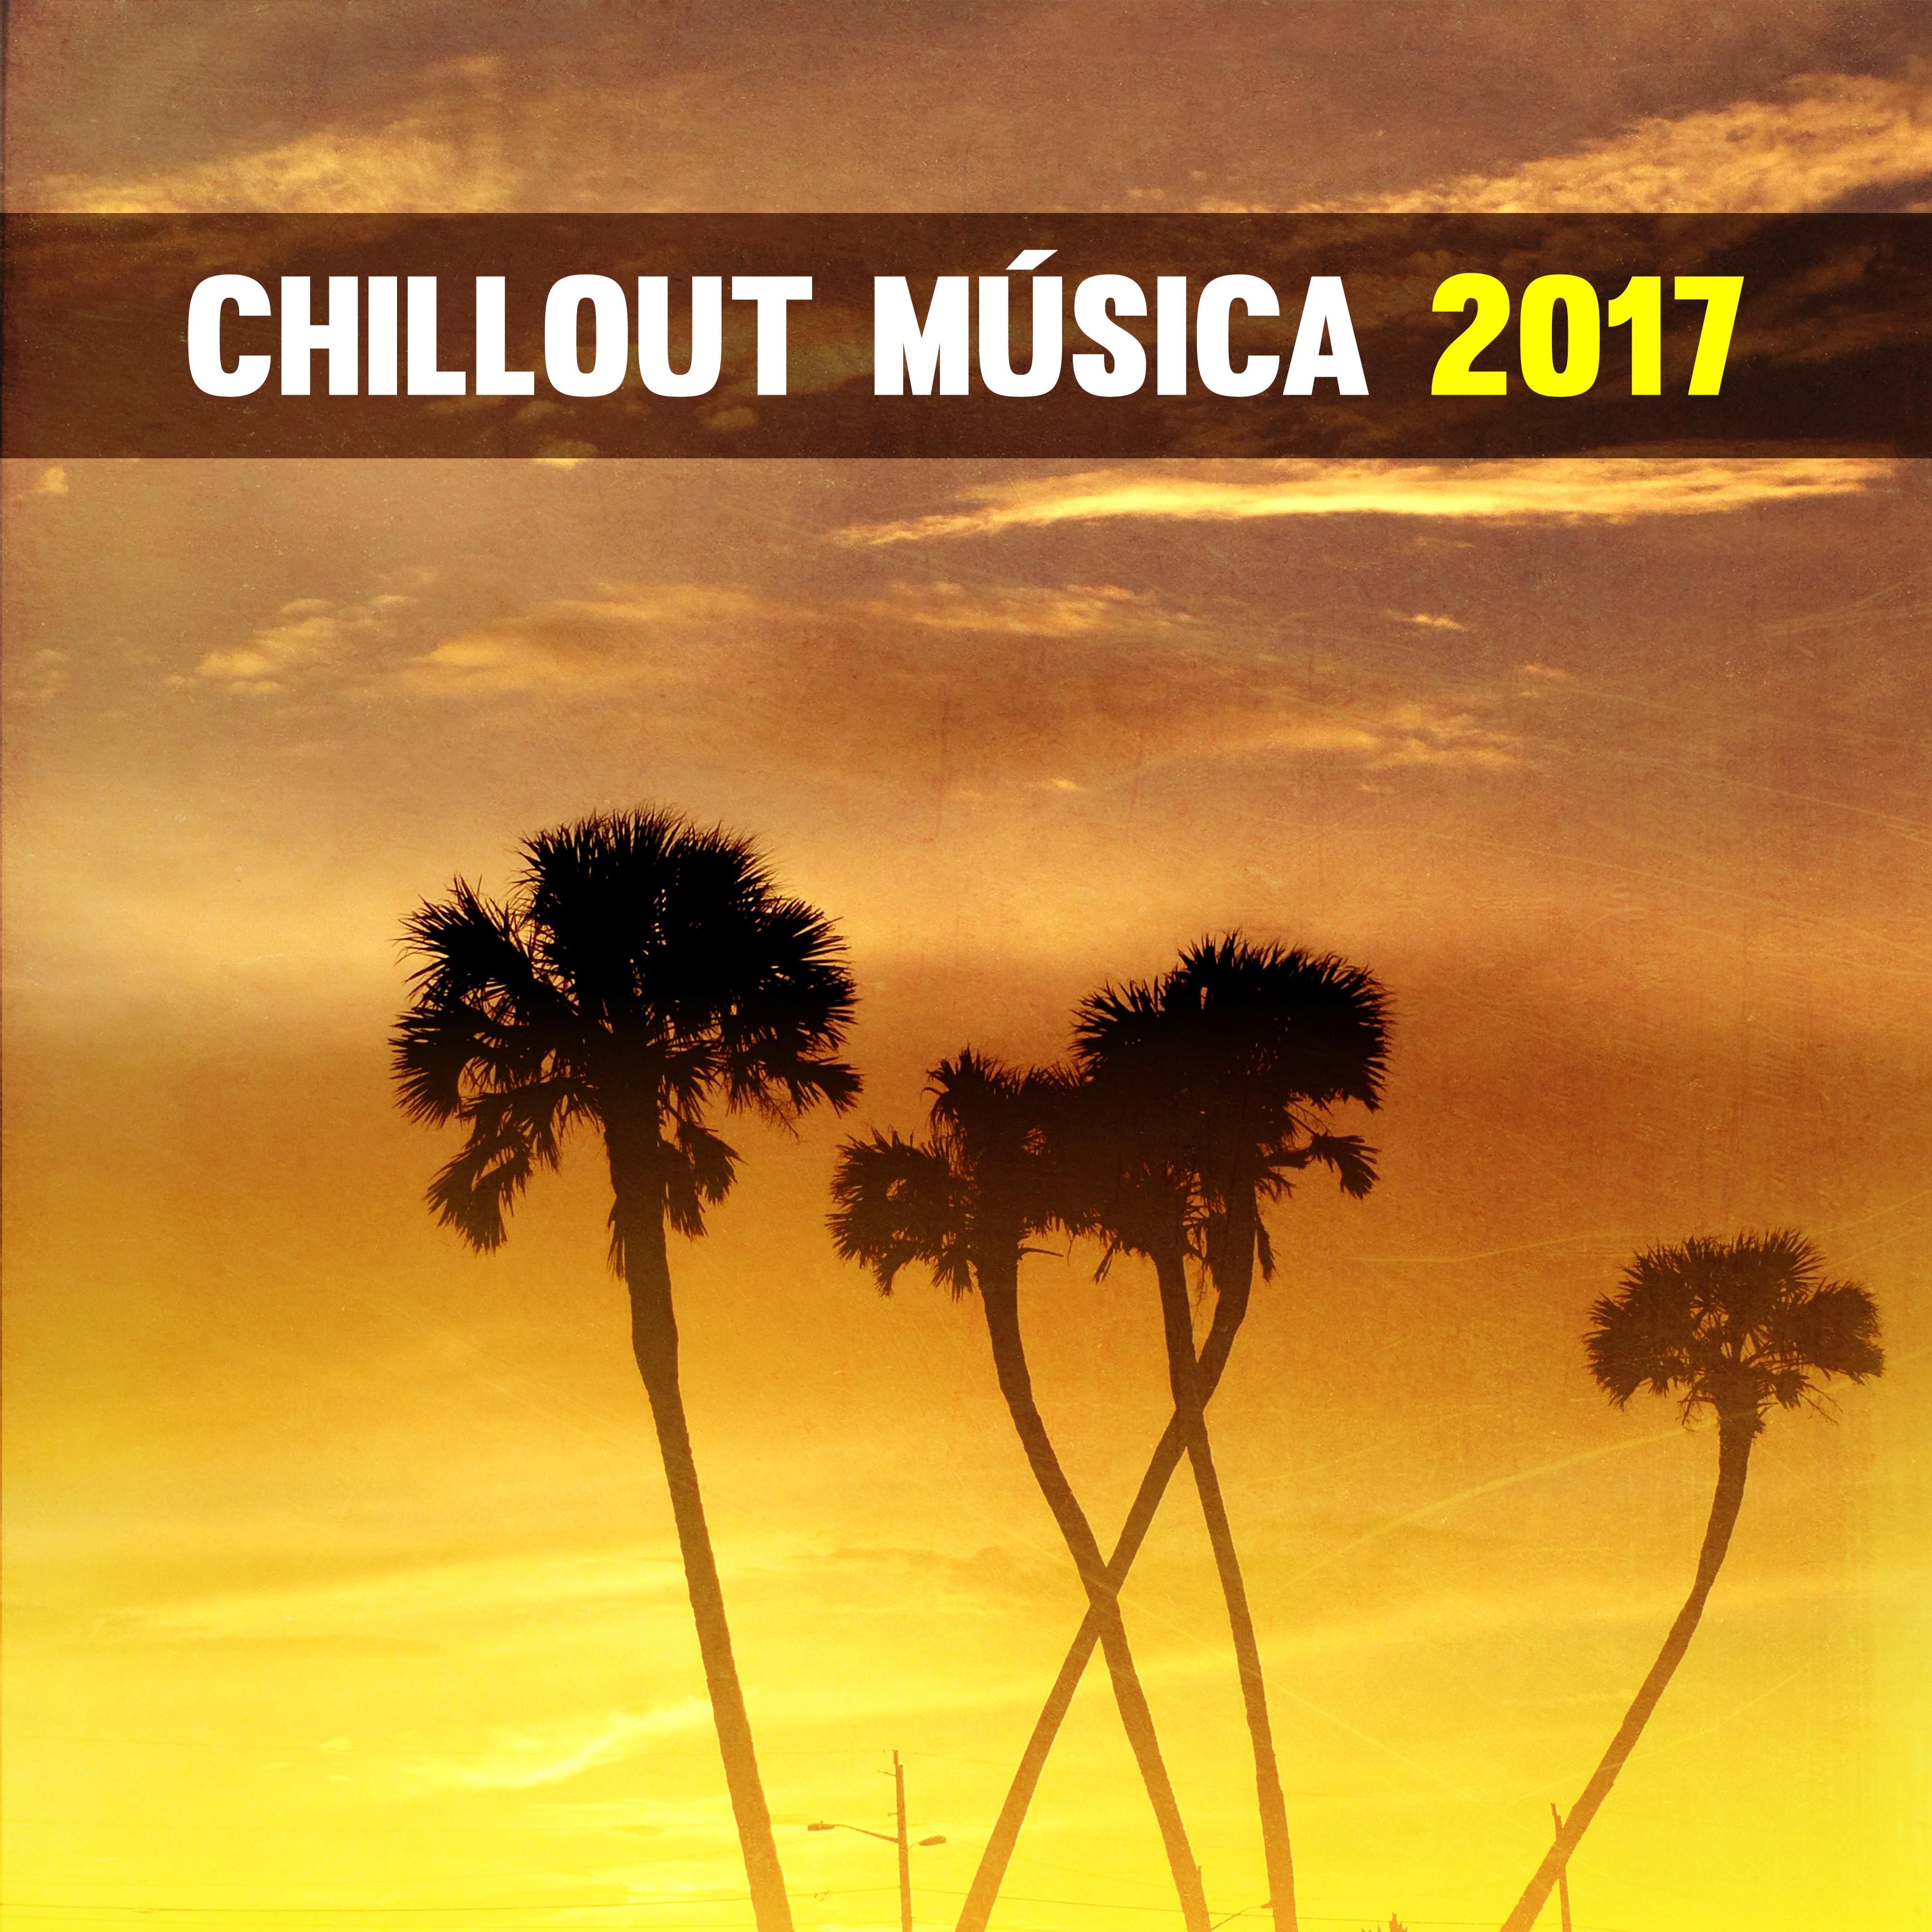 Chillout Música 2017 – Noche de Fiesta, Música Sexy, Relajar la Música, Verano 2017, Música Electrónica para la Fiesta en la Playa